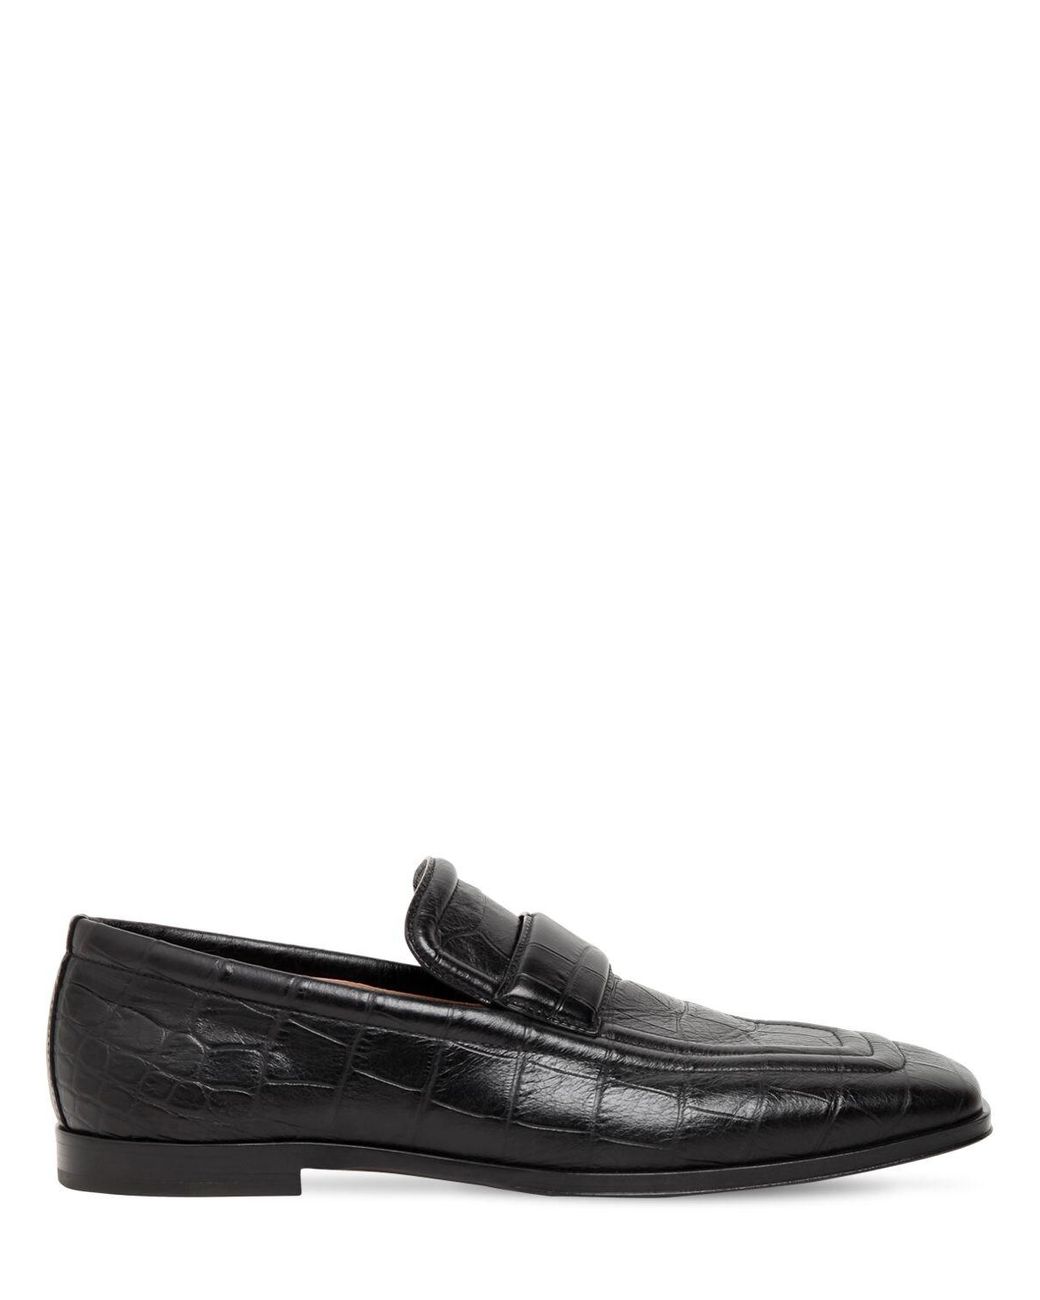 Bottega Veneta Croc Embossed Leather Loafers in Black for Men - Lyst